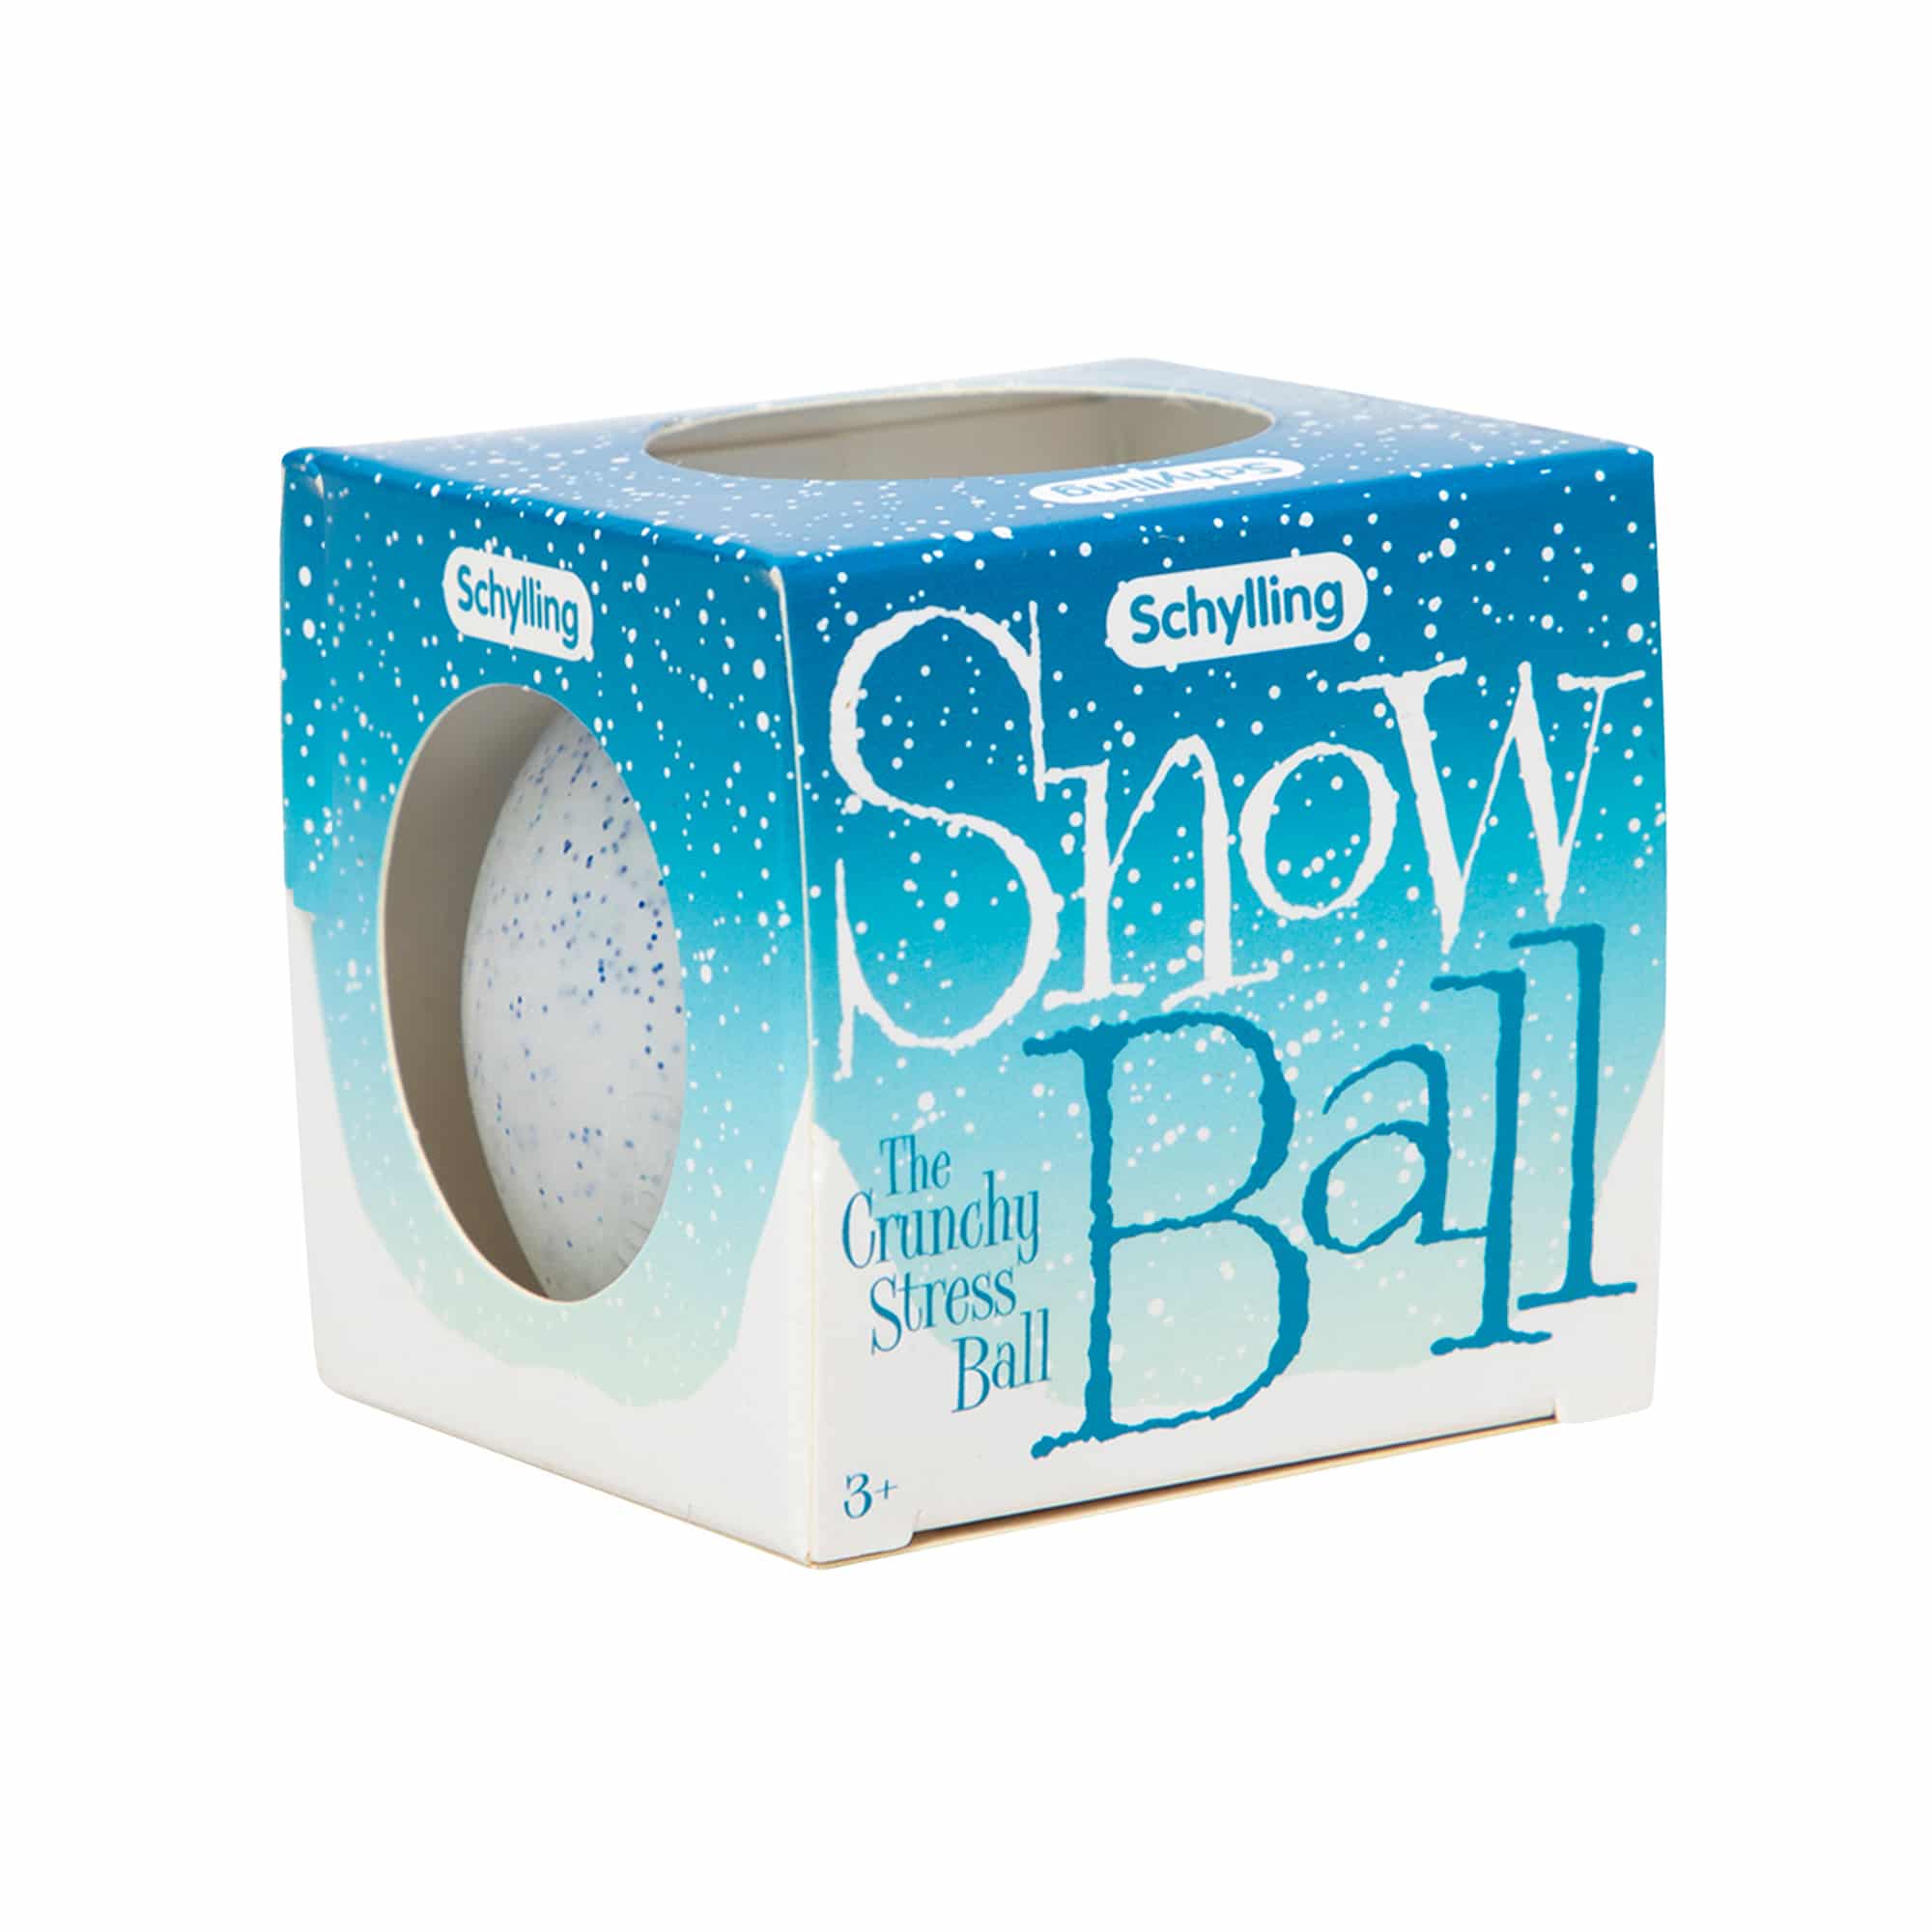 Snow Ball - Crunchy Stress Ball    